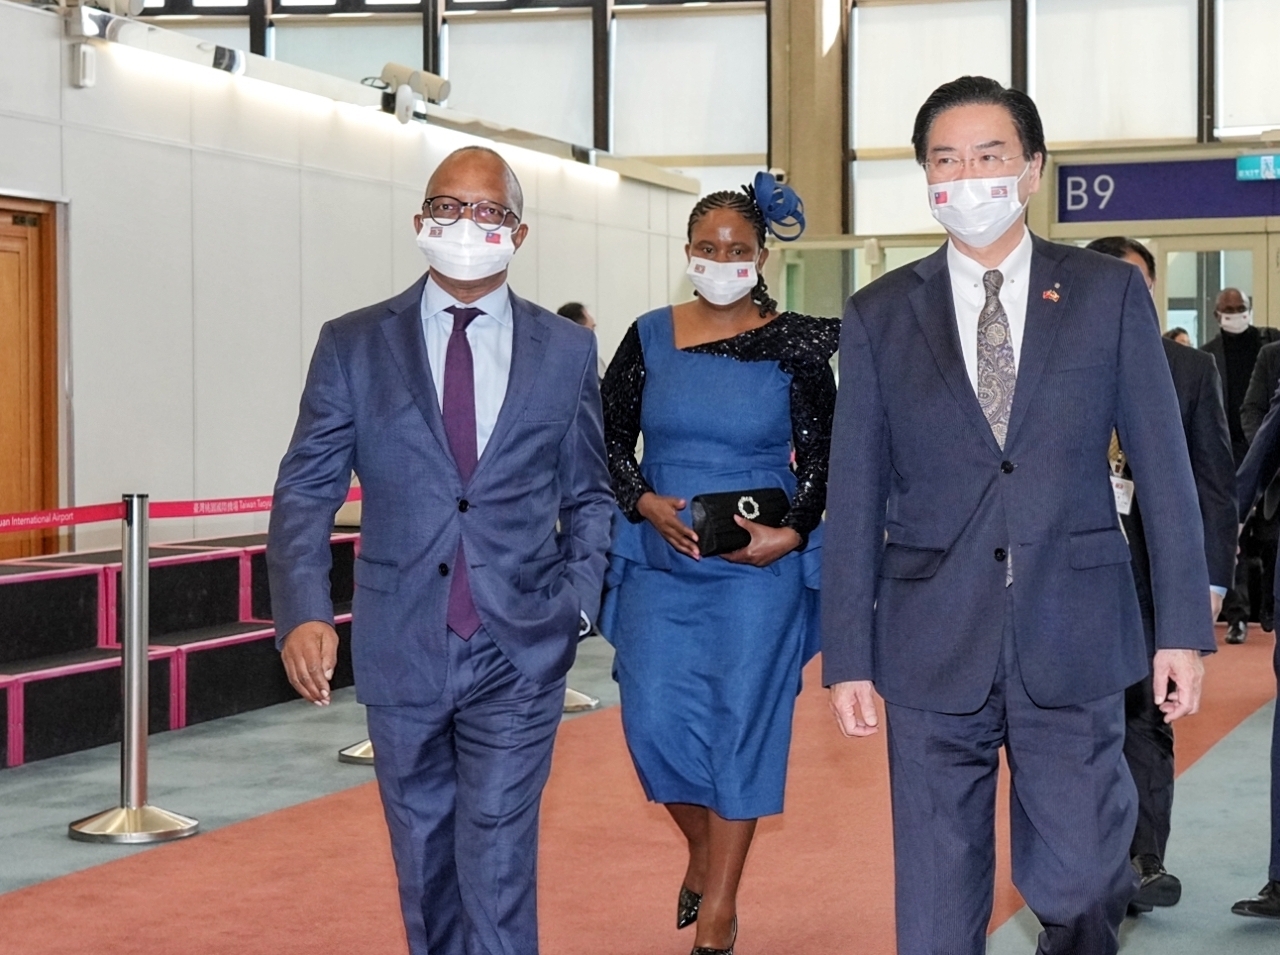 Phái đoàn Eswatini do Thủ tướng H. E. Cleopas Sipho Dlamini đã đáp xuống sân bay Đài Loan vào chiều ngày 05/03, Ngoại trưởng Ngô Chiêu Nhiếp đã đích thân đến tiếp đón. (Ảnh do Bộ Ngoại giao cung cấp)